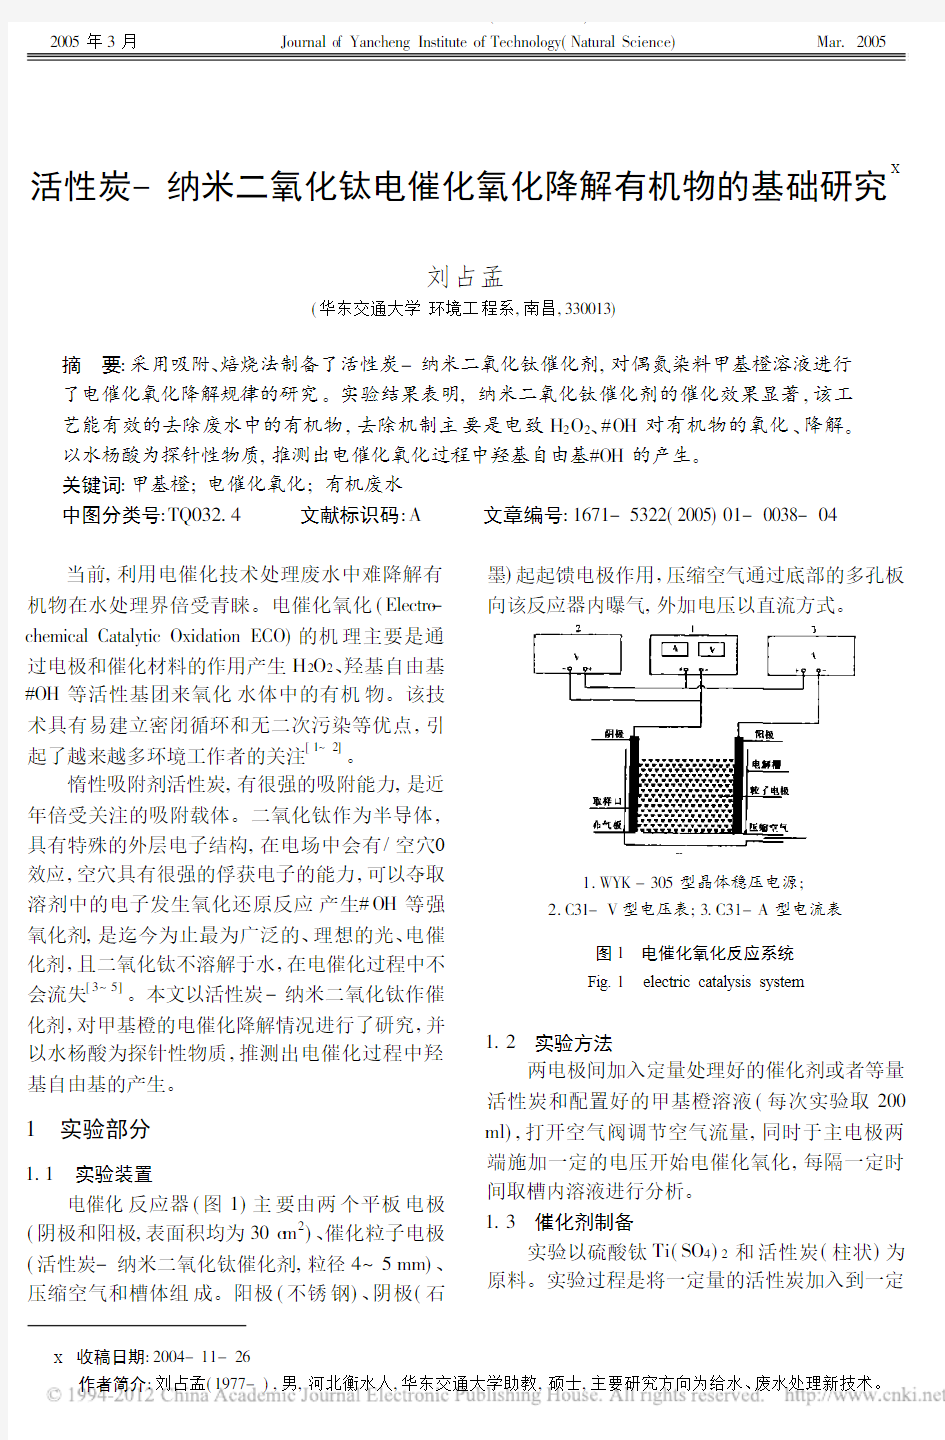 活性炭_纳米二氧化钛电催化氧化降解有机物的基础研究_刘占孟